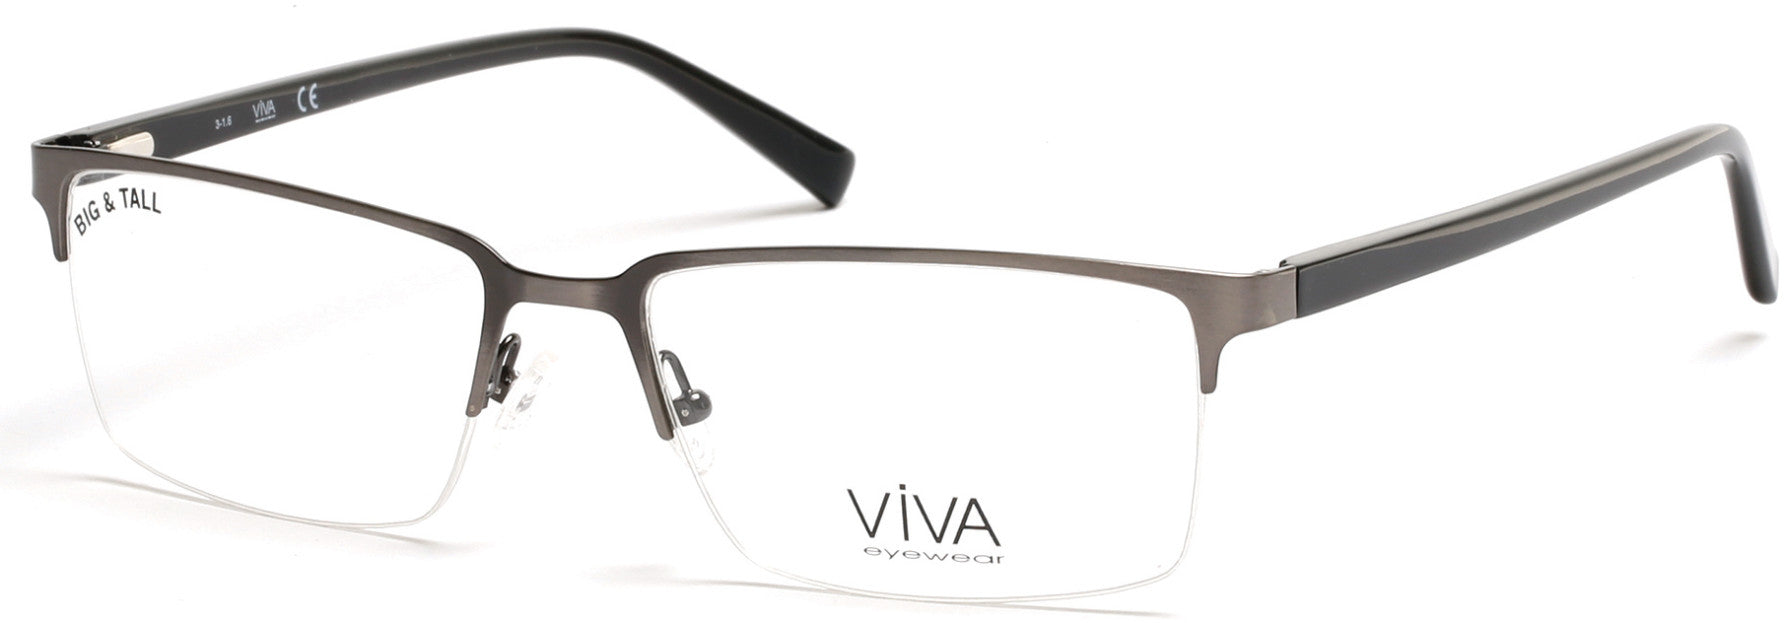 Viva VV4025 Eyeglasses 009-009 - Matte Gunmetal